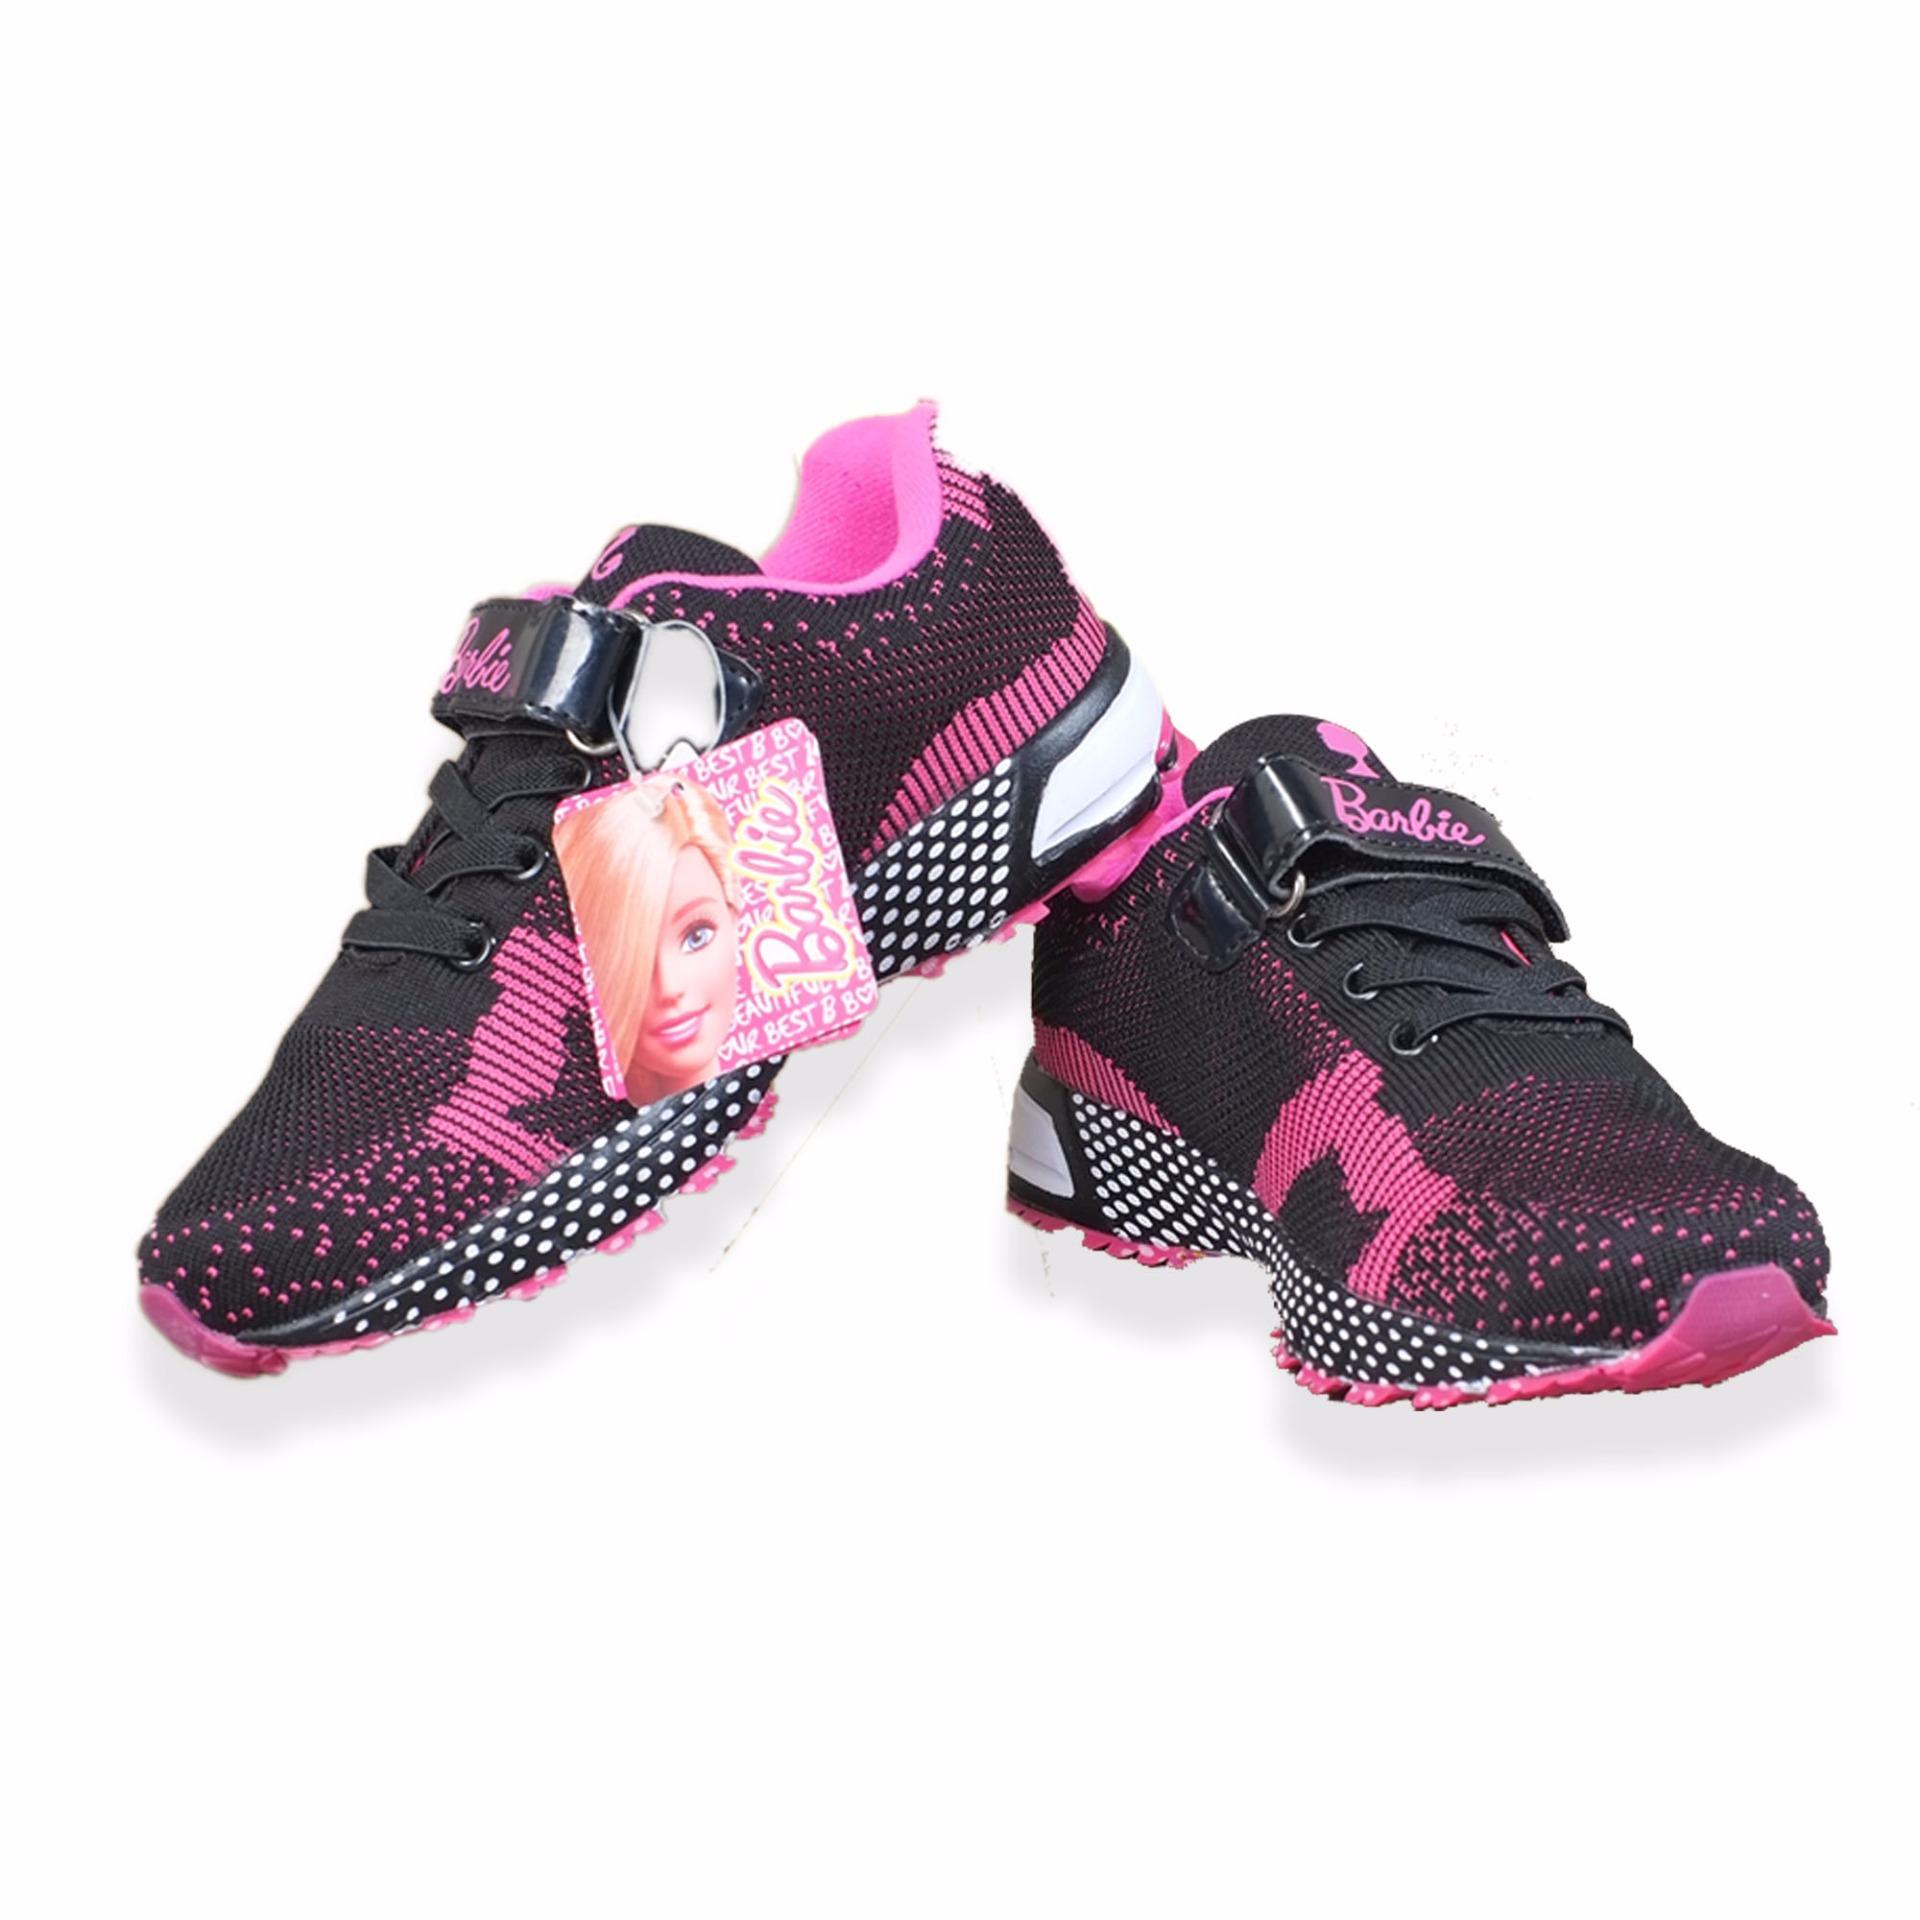 Giày thể thao bé gái Barbie 31625 từ 6-12 (đen hồng)